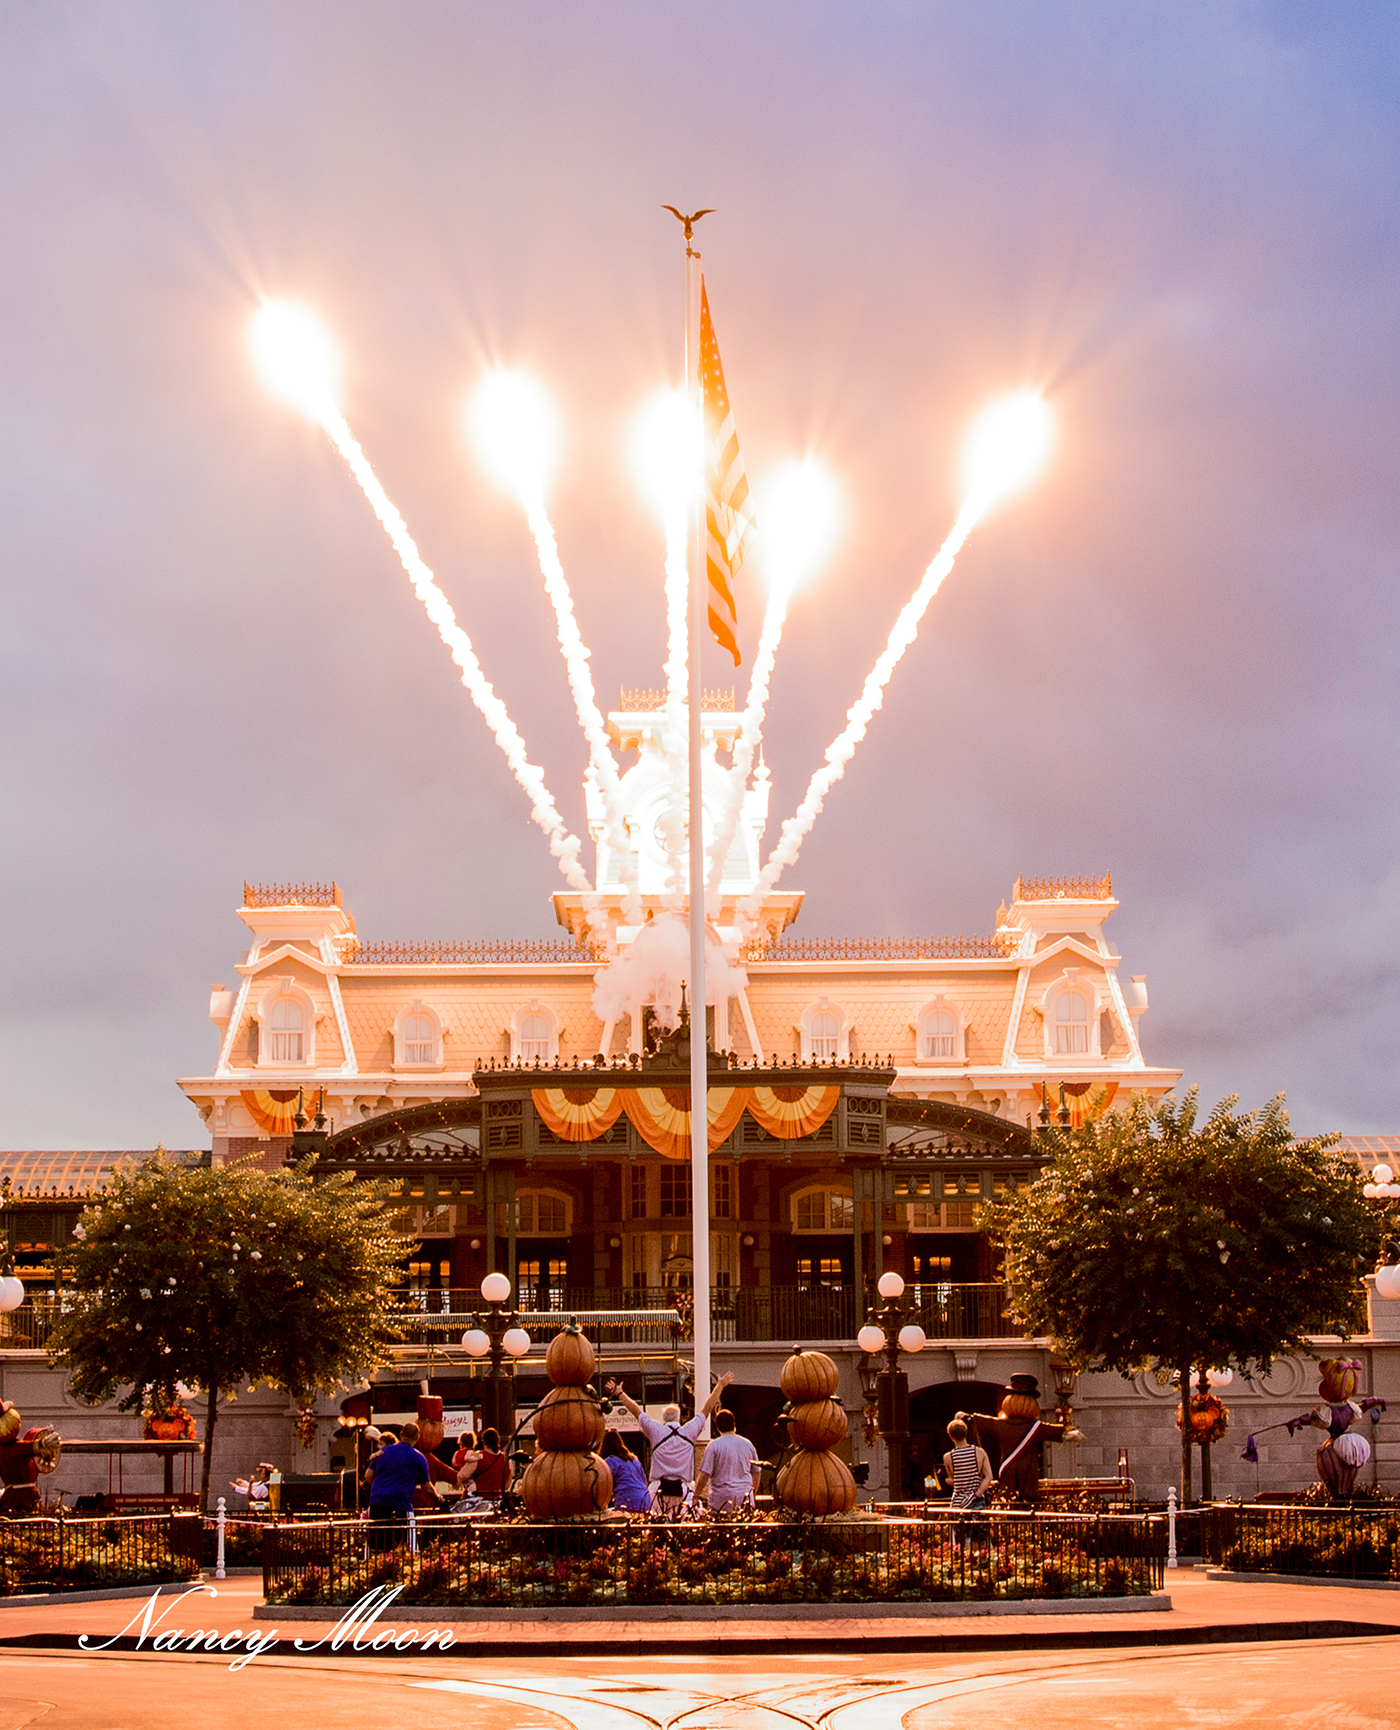 Adobe Portfolio fireworks disney magic kingdom wishes